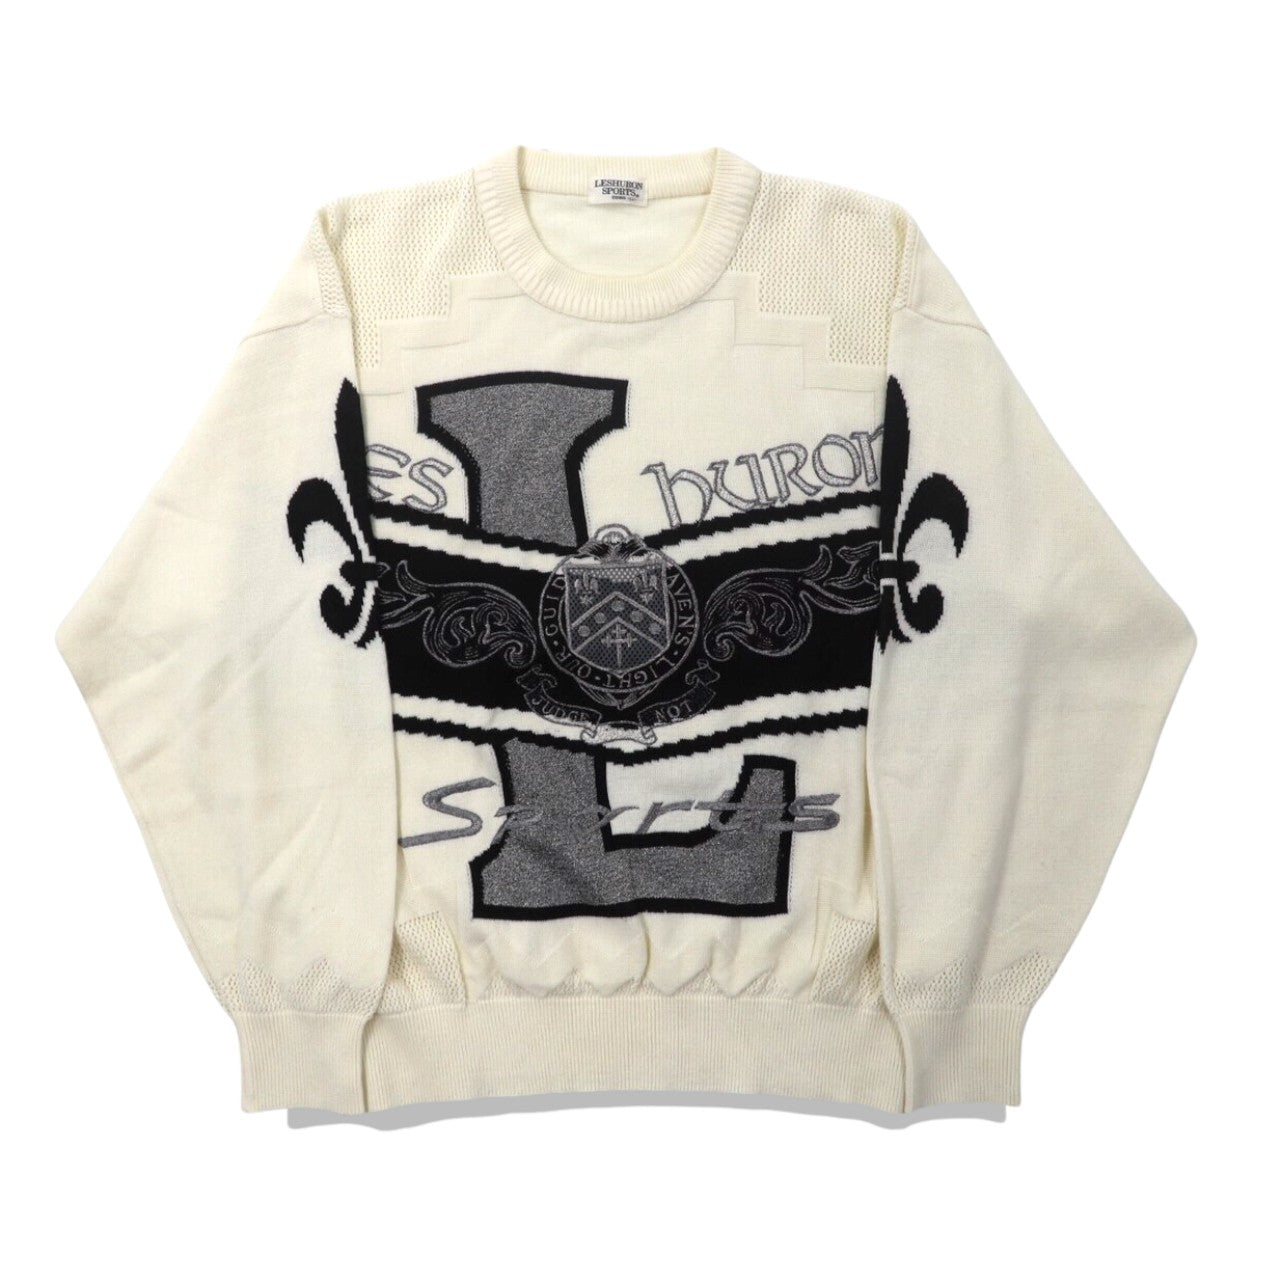 LESHURON SPORTS UOMO ニットセーター LL ホワイト アクリル エンブレム刺繍 日本製-VINTAGE-古着